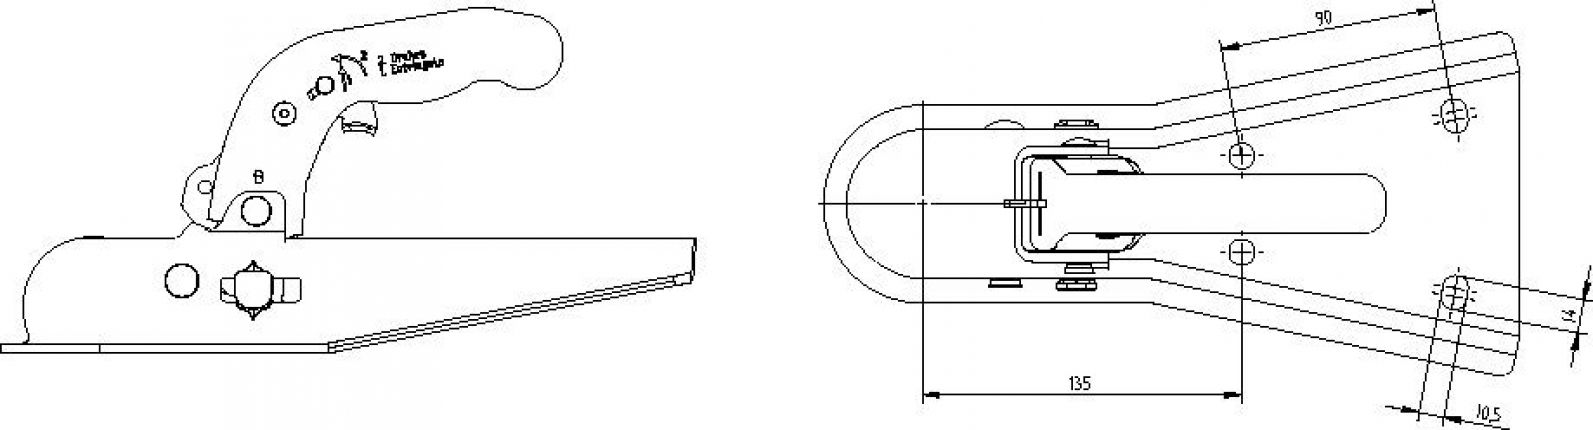 Rotule monobloc, attelage de remorque, tête sphérique, boule d'attelage,  plaque à visser, boule d'attelage - Knott GmbH